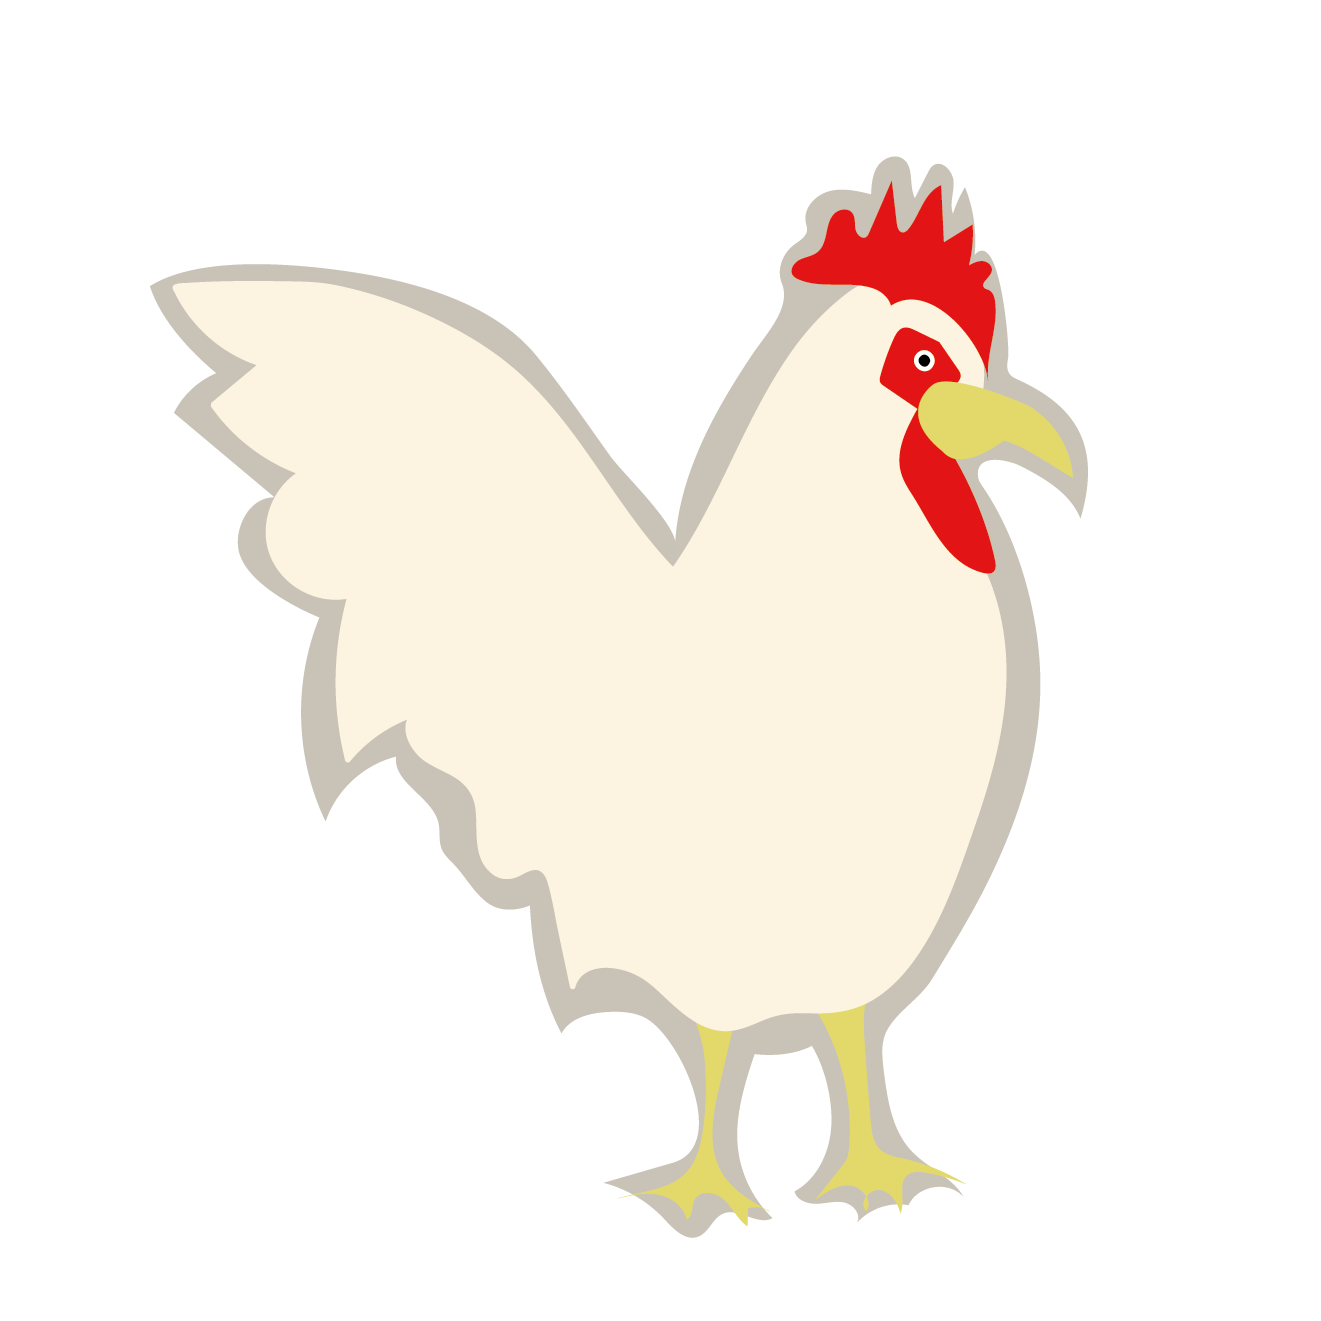 鶏鳥 にわとり 年賀状ワンポイントイラスト 酉年 とりどし 商用フリー 無料 のイラスト素材なら イラストマンション